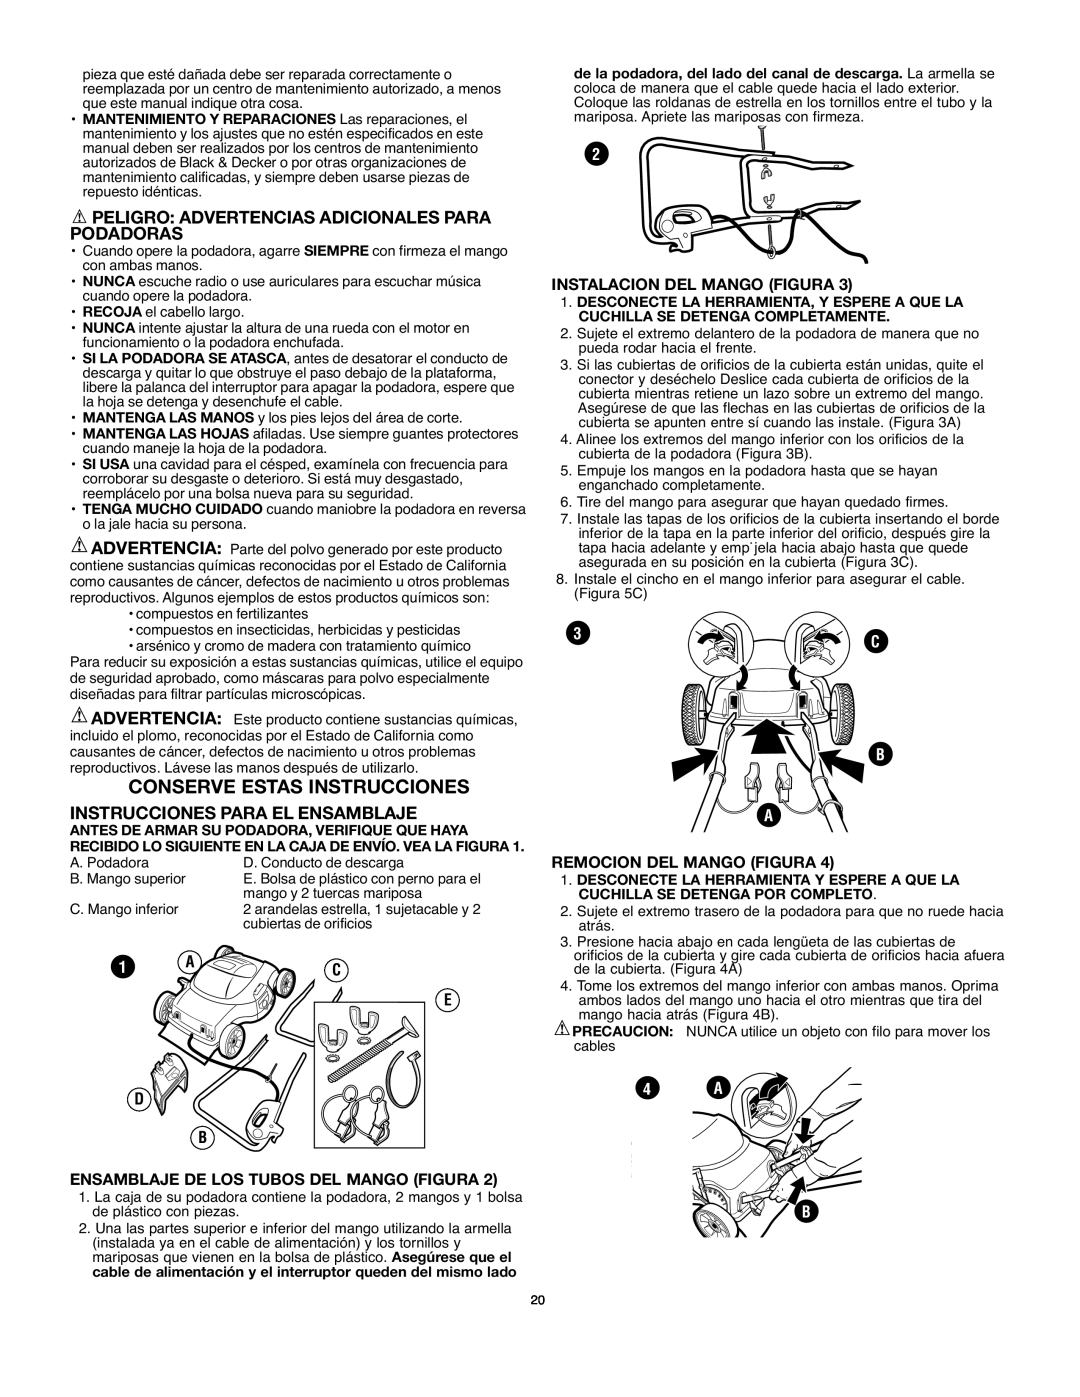 Black & Decker mm275 Conserve Estas Instrucciones, Peligro Advertencias Adicionales Para Podadoras, E D B, 4 A B 